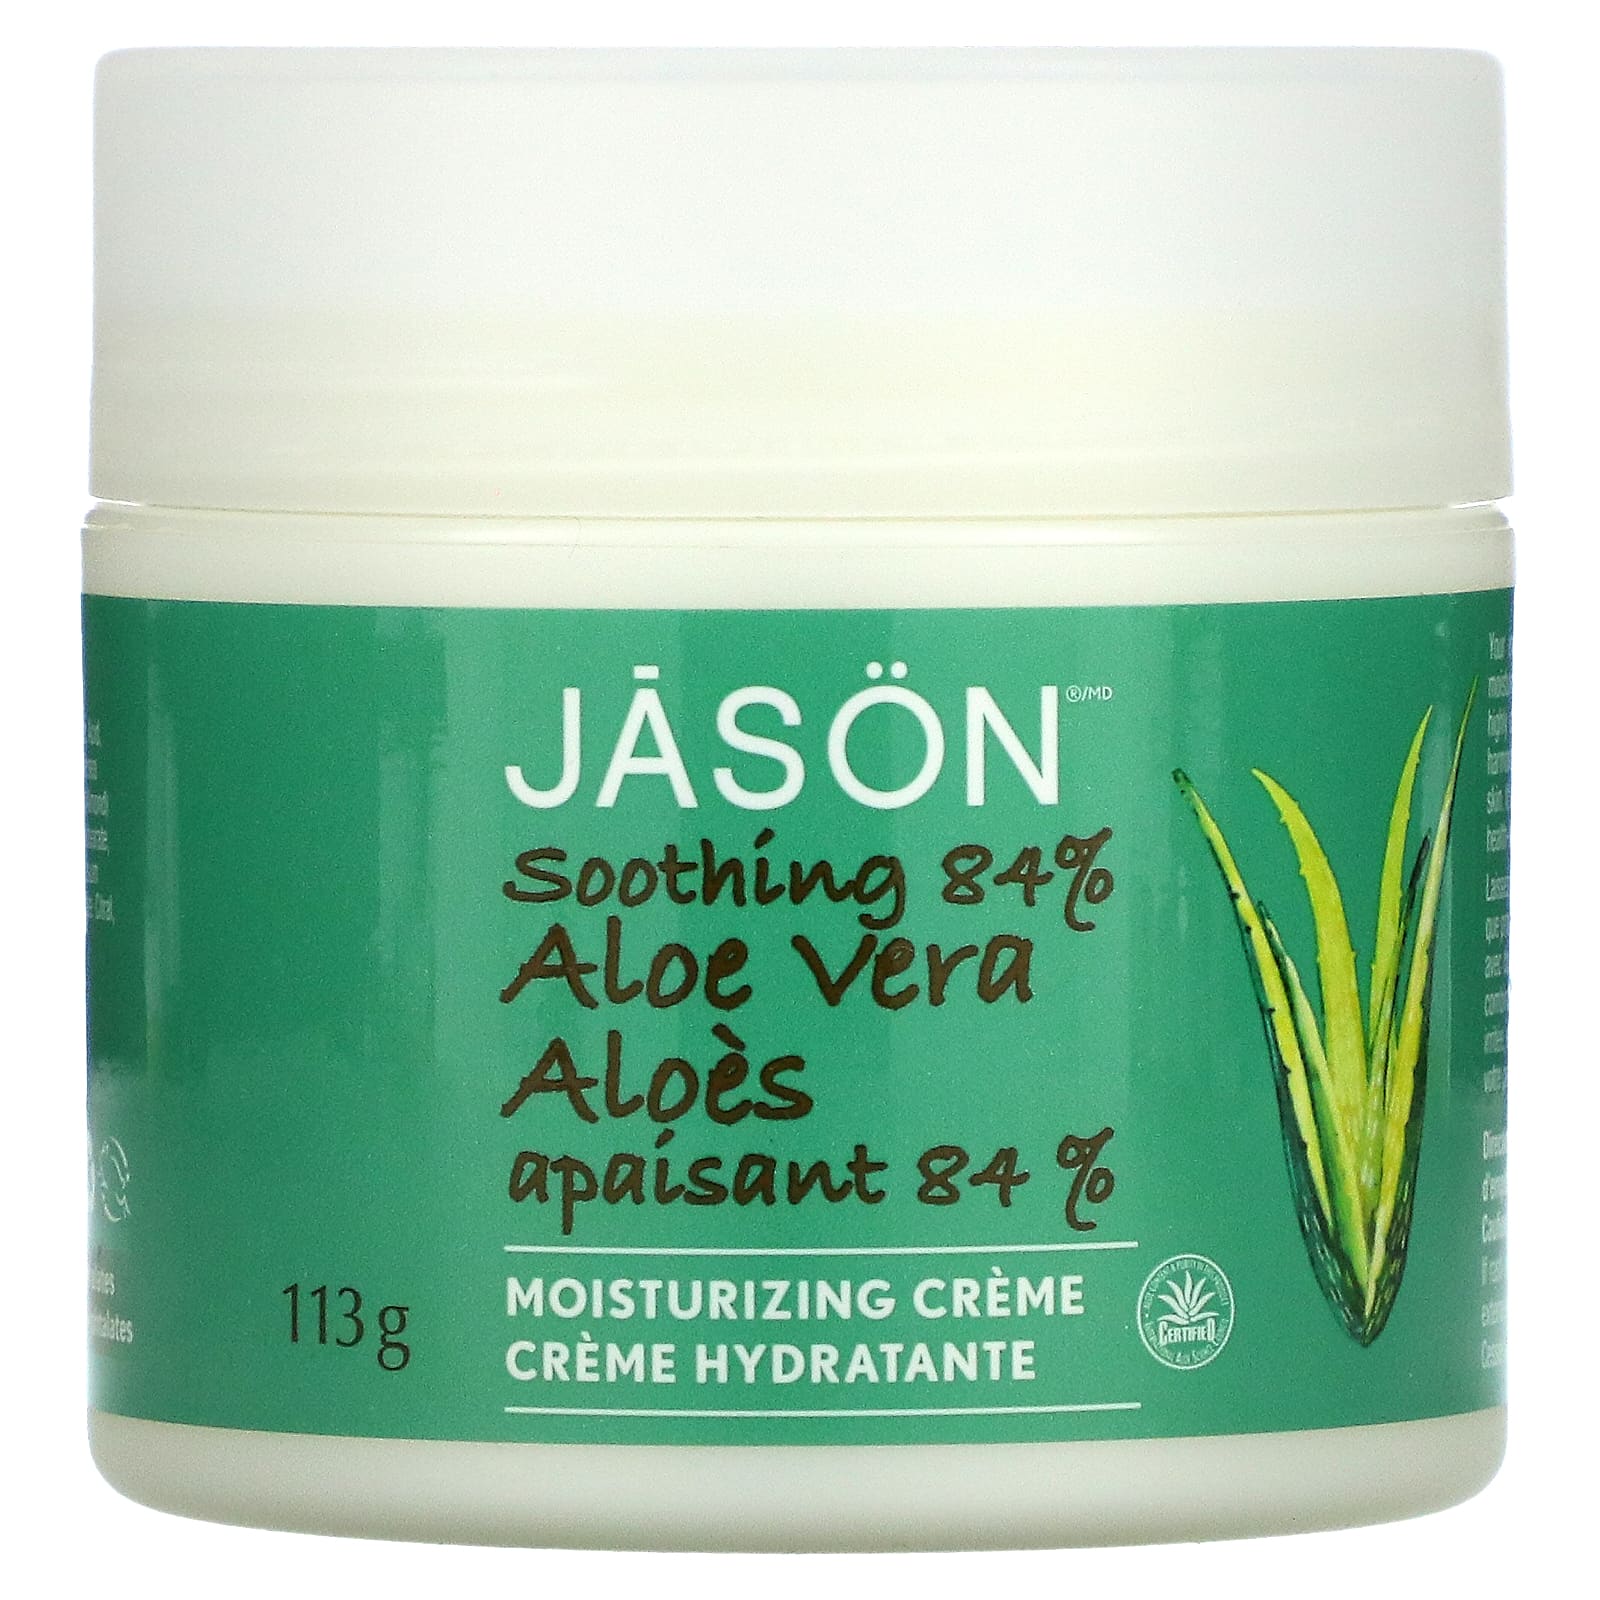 Jason Natural Aloe Vera 84% Moisturizing Creme Soothing 4 oz (113 g)